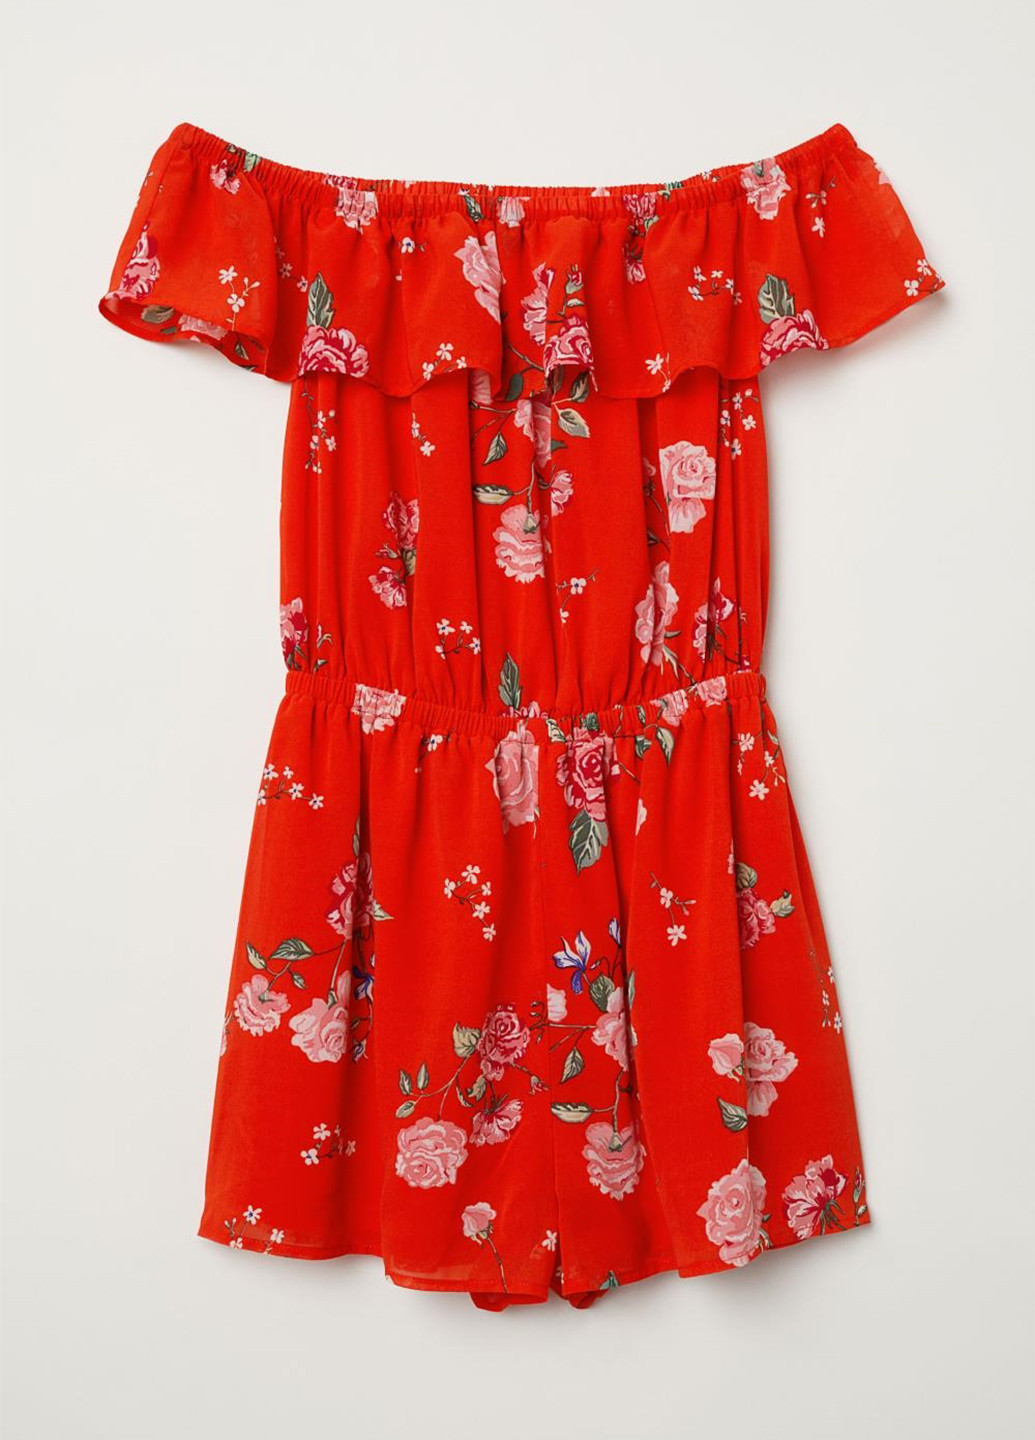 Комбинезон H&M комбинезон-шорты цветочный красный кэжуал полиэстер